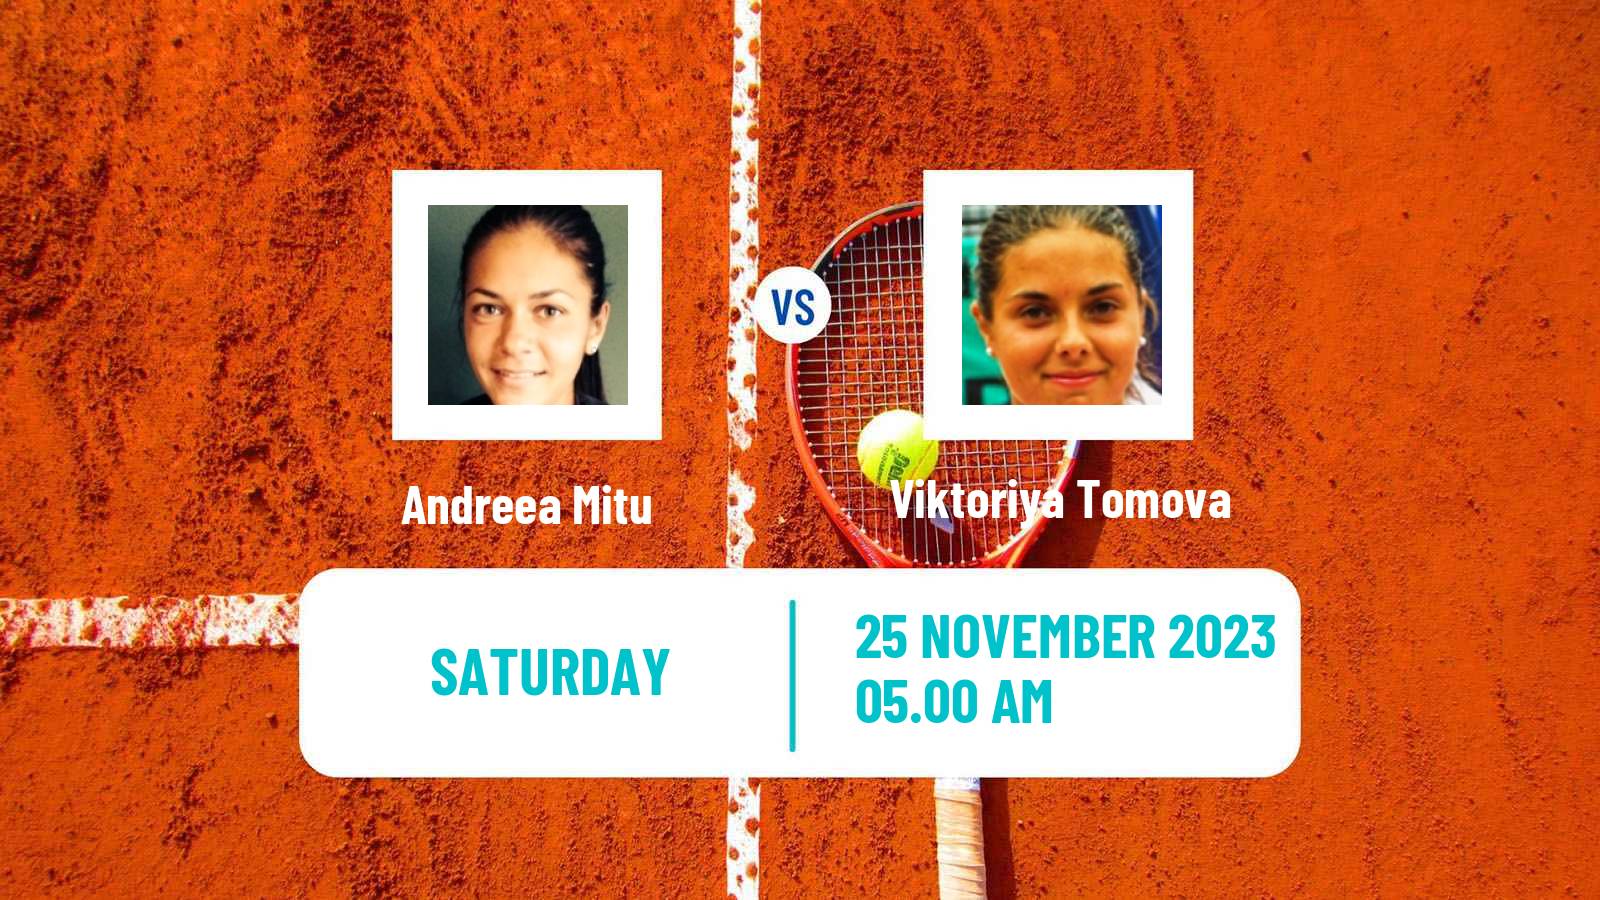 Tennis ITF W100 Valencia Women Andreea Mitu - Viktoriya Tomova